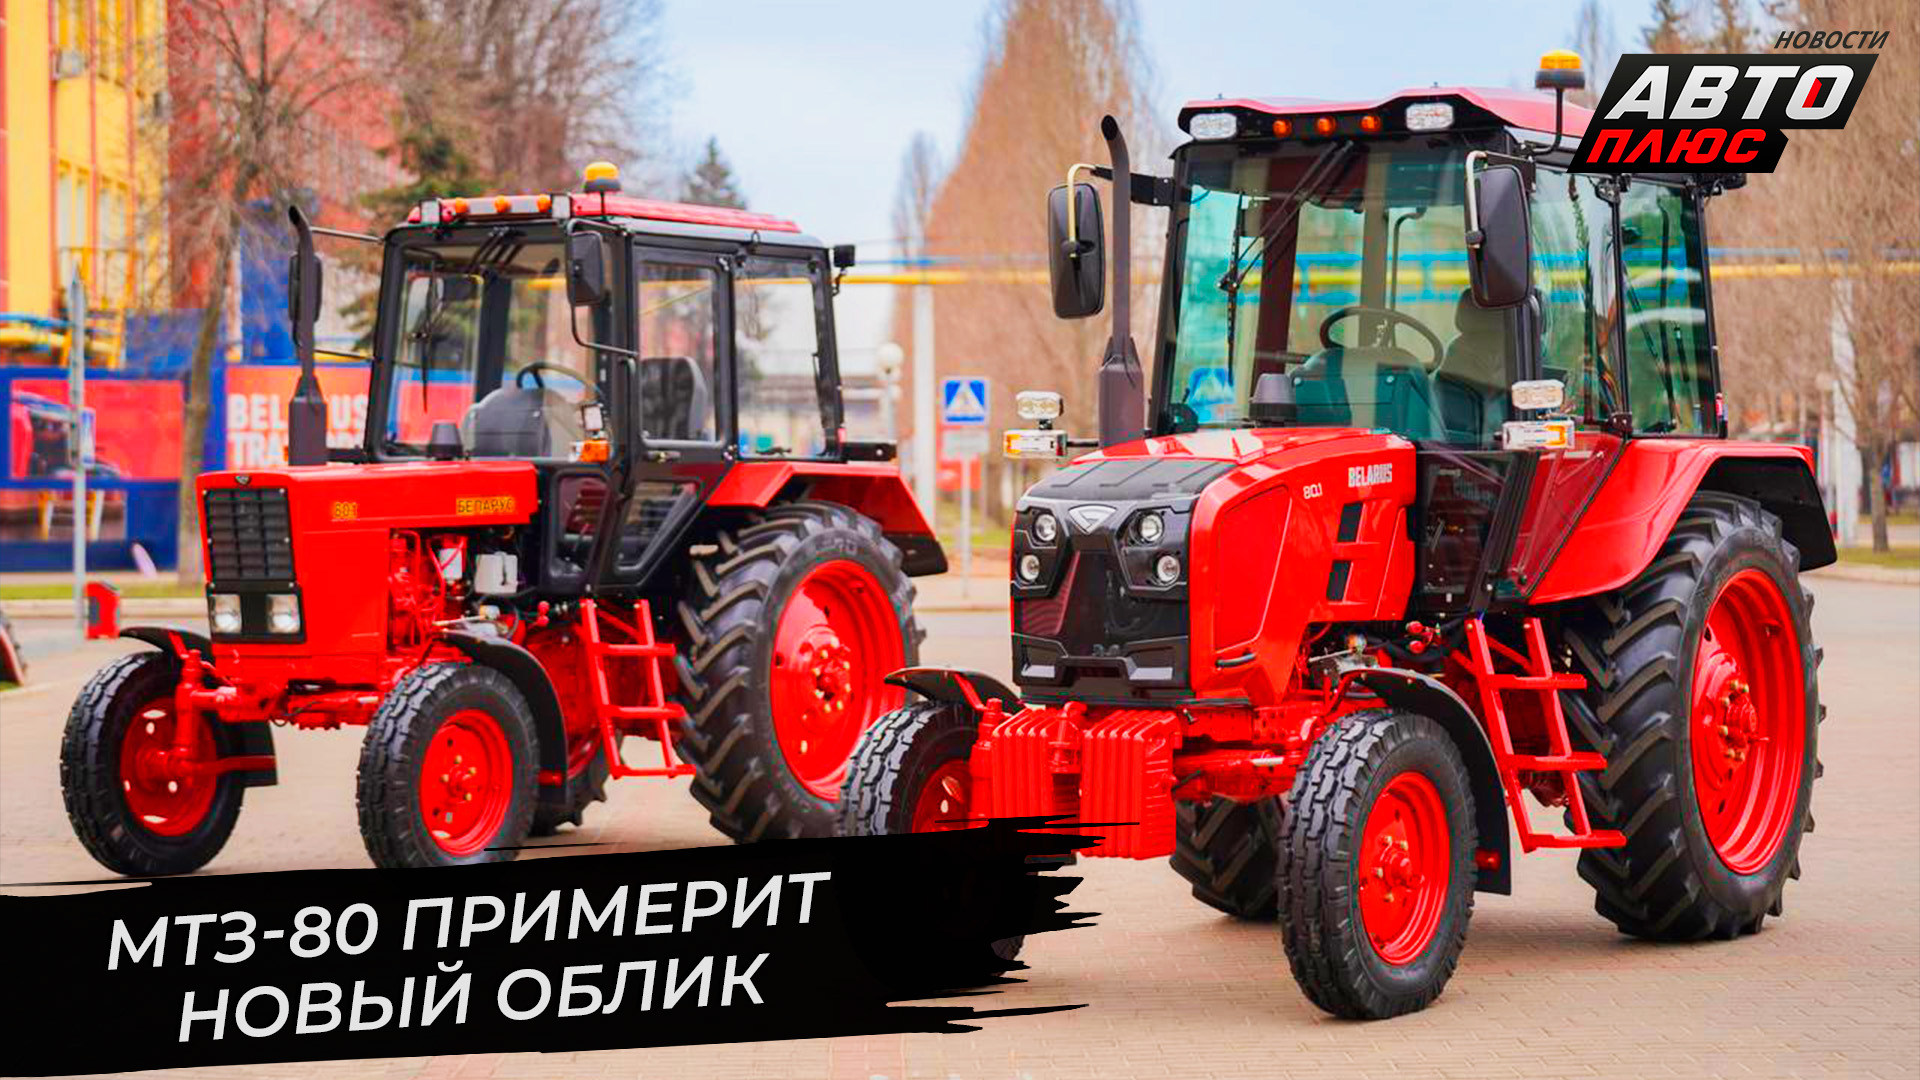 Трактор МТЗ-80 сменил облик, дизель Д-245 ждёт модернизация 